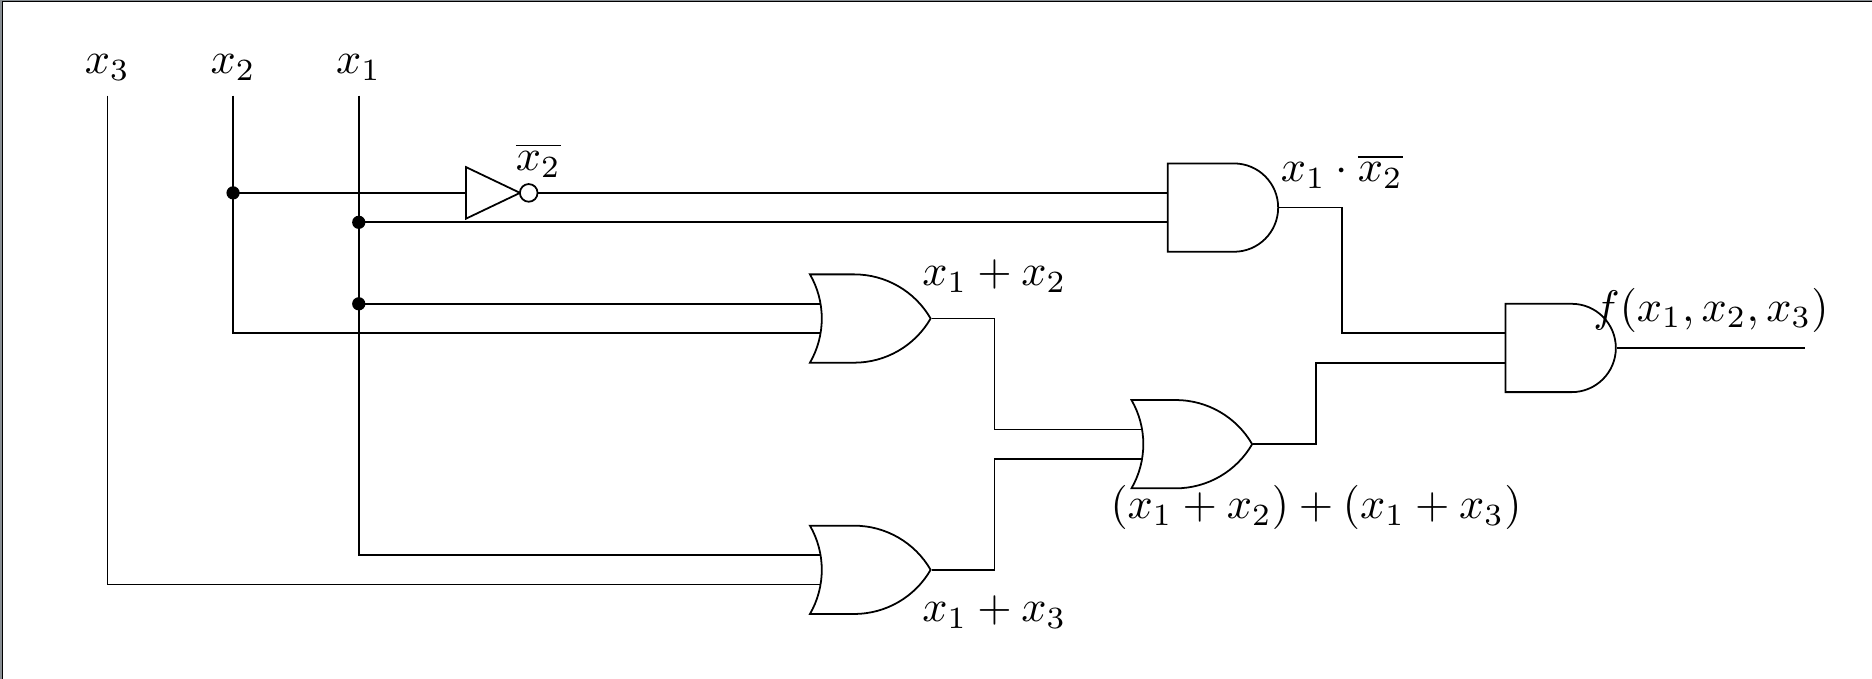 Initial gate diagram